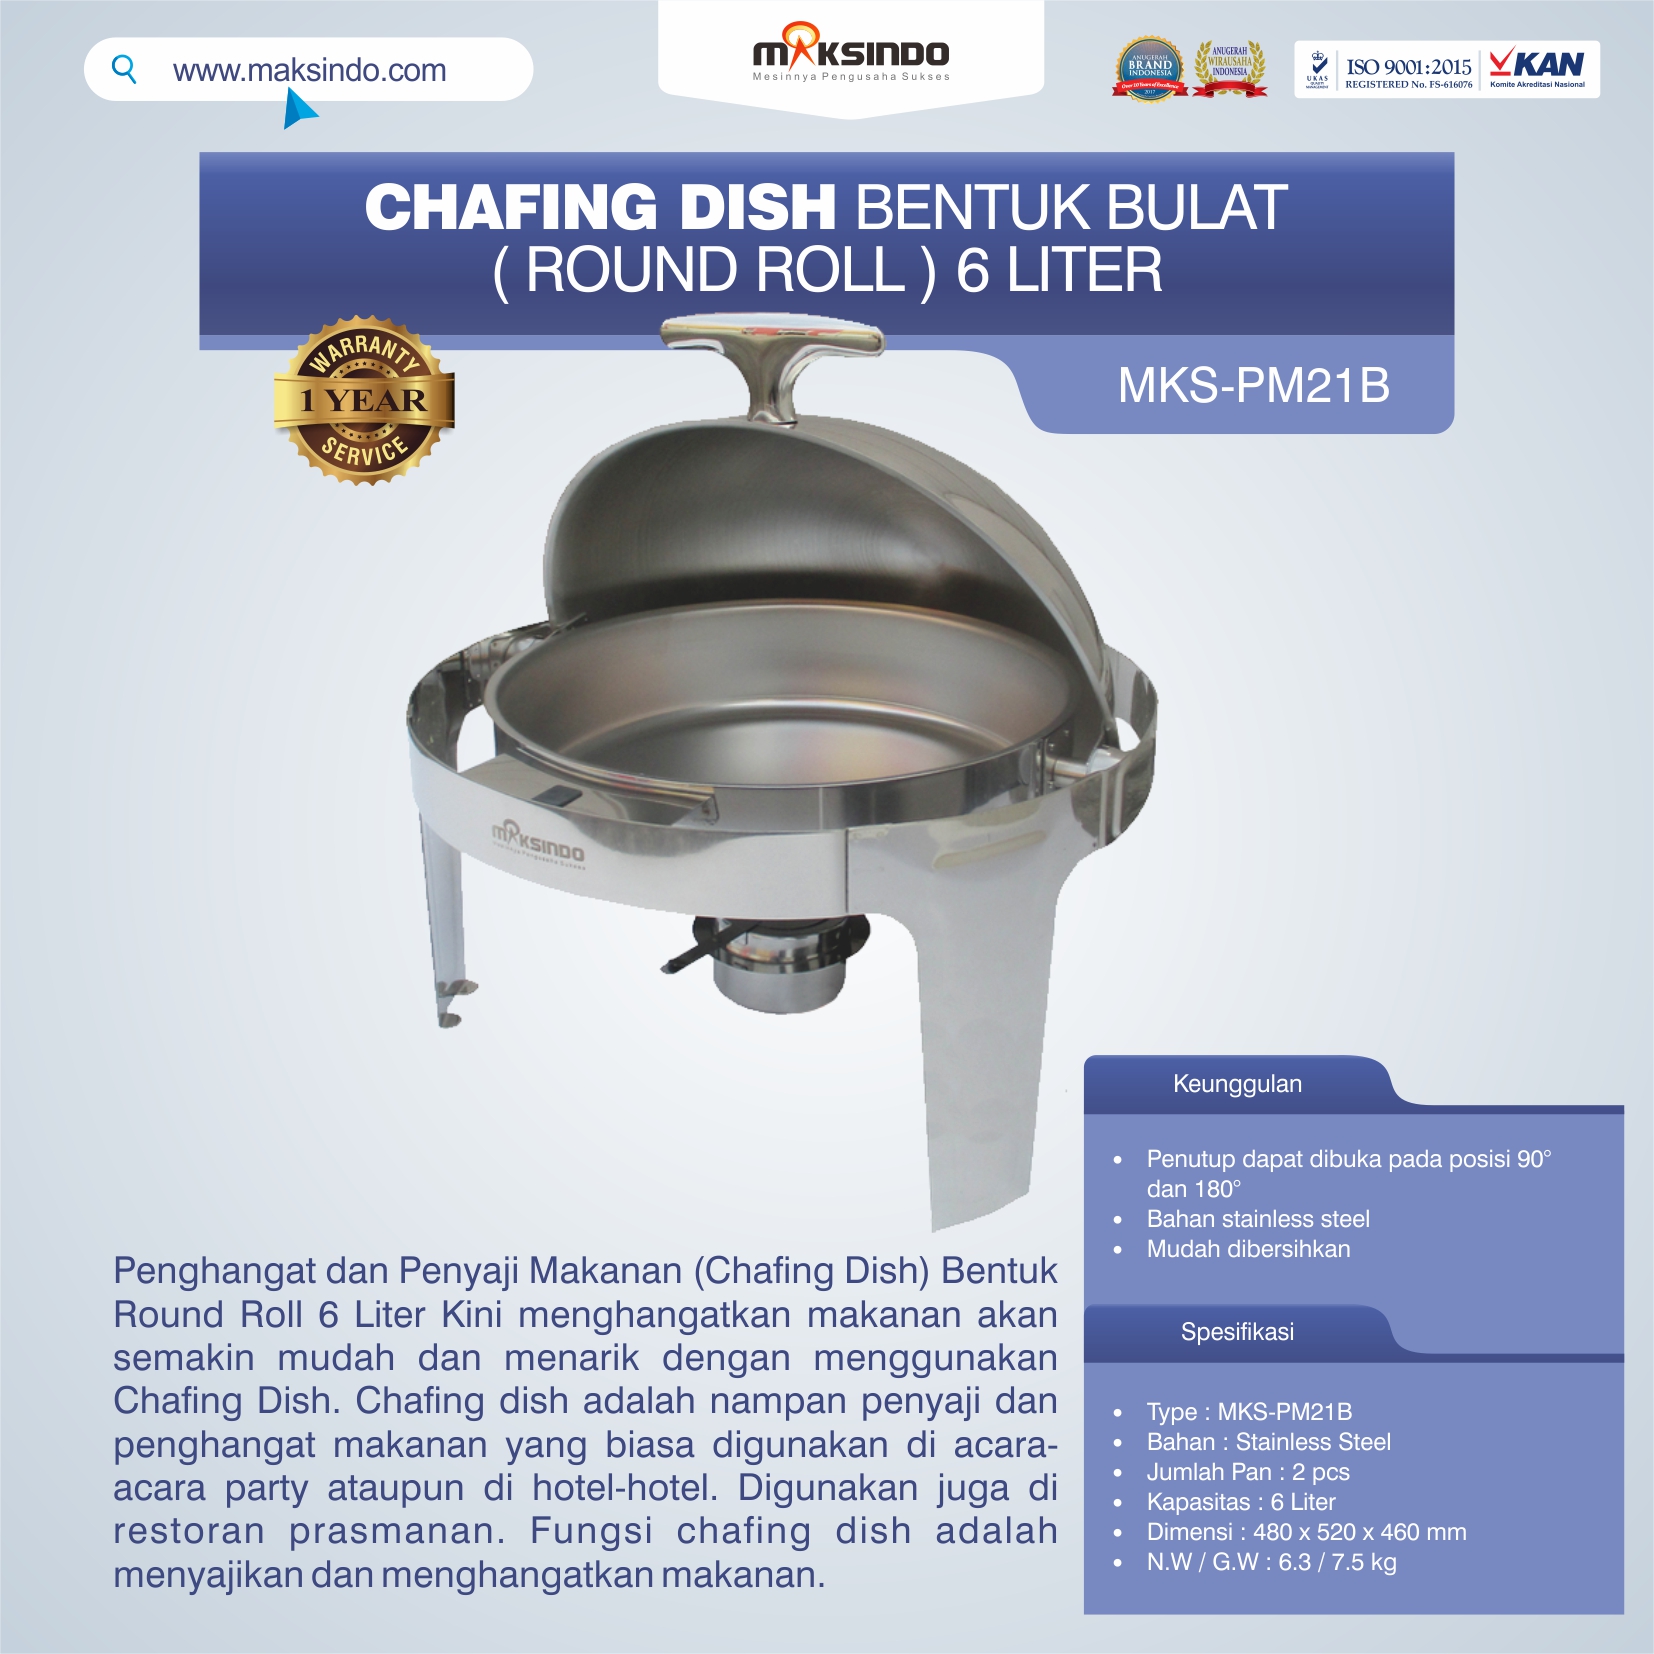 Chafing Dish Bentuk Bulat (Round Roll) 6 Liter